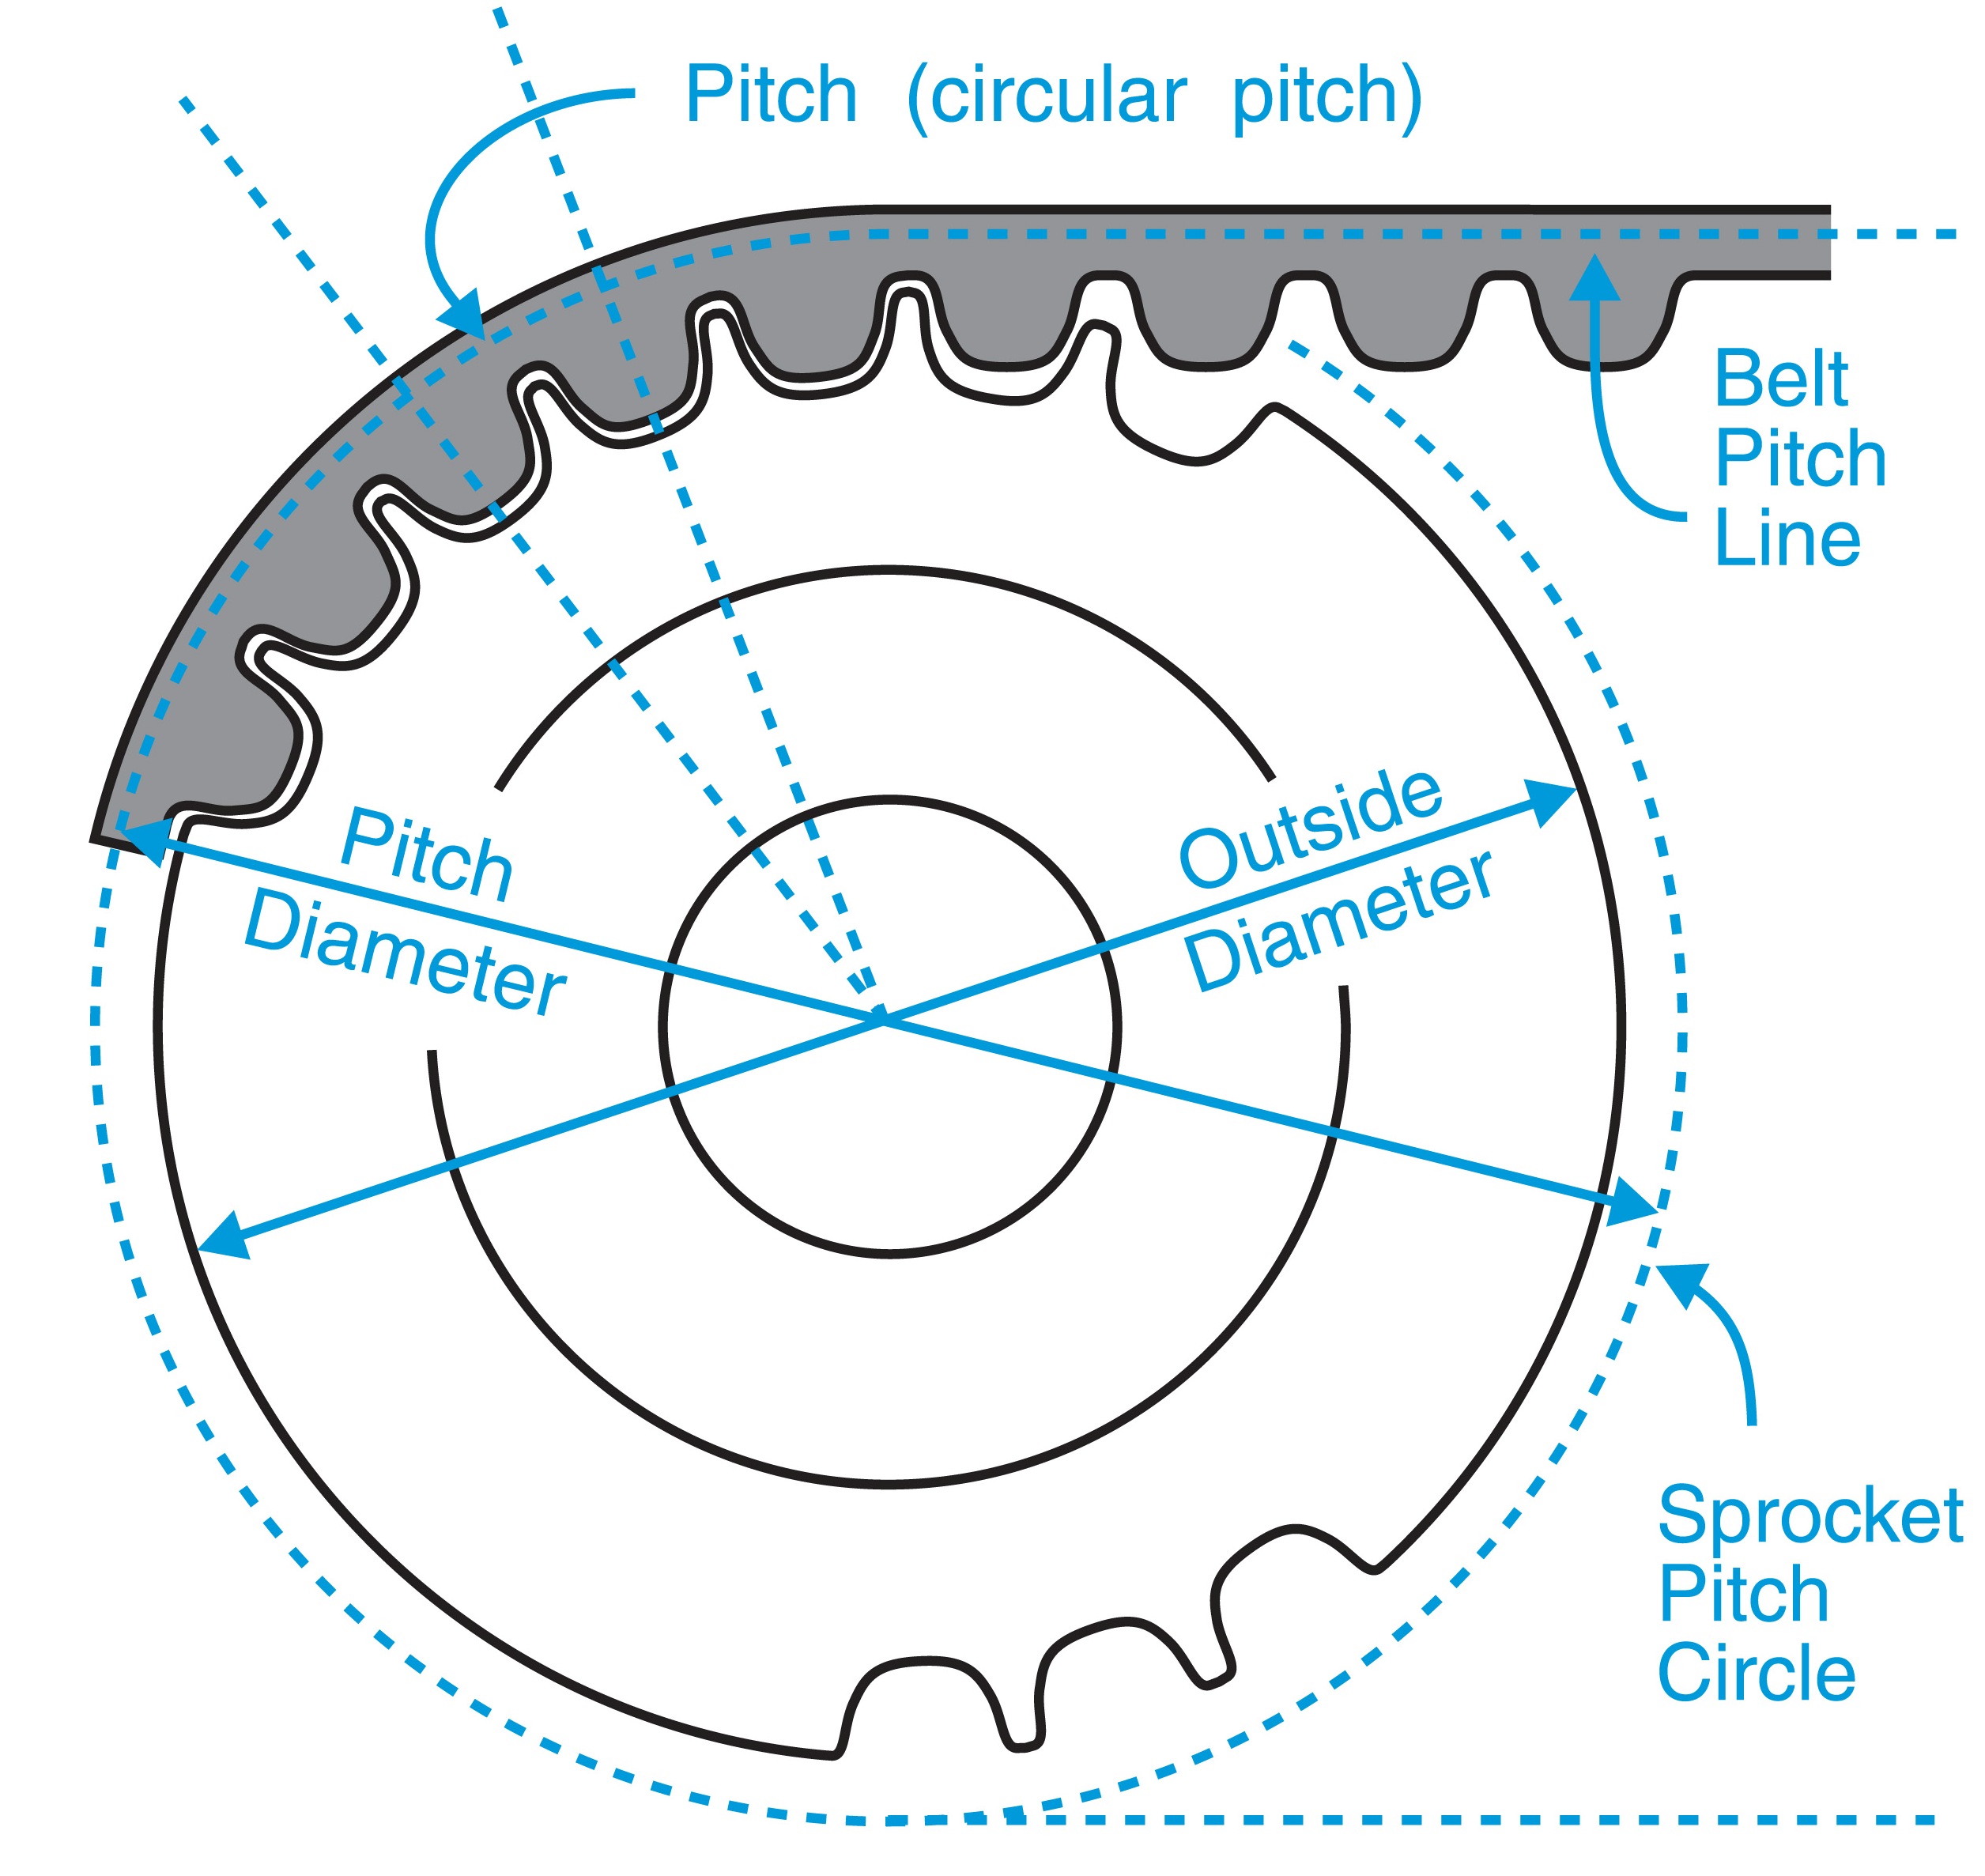 v belt pulley pitch diameter